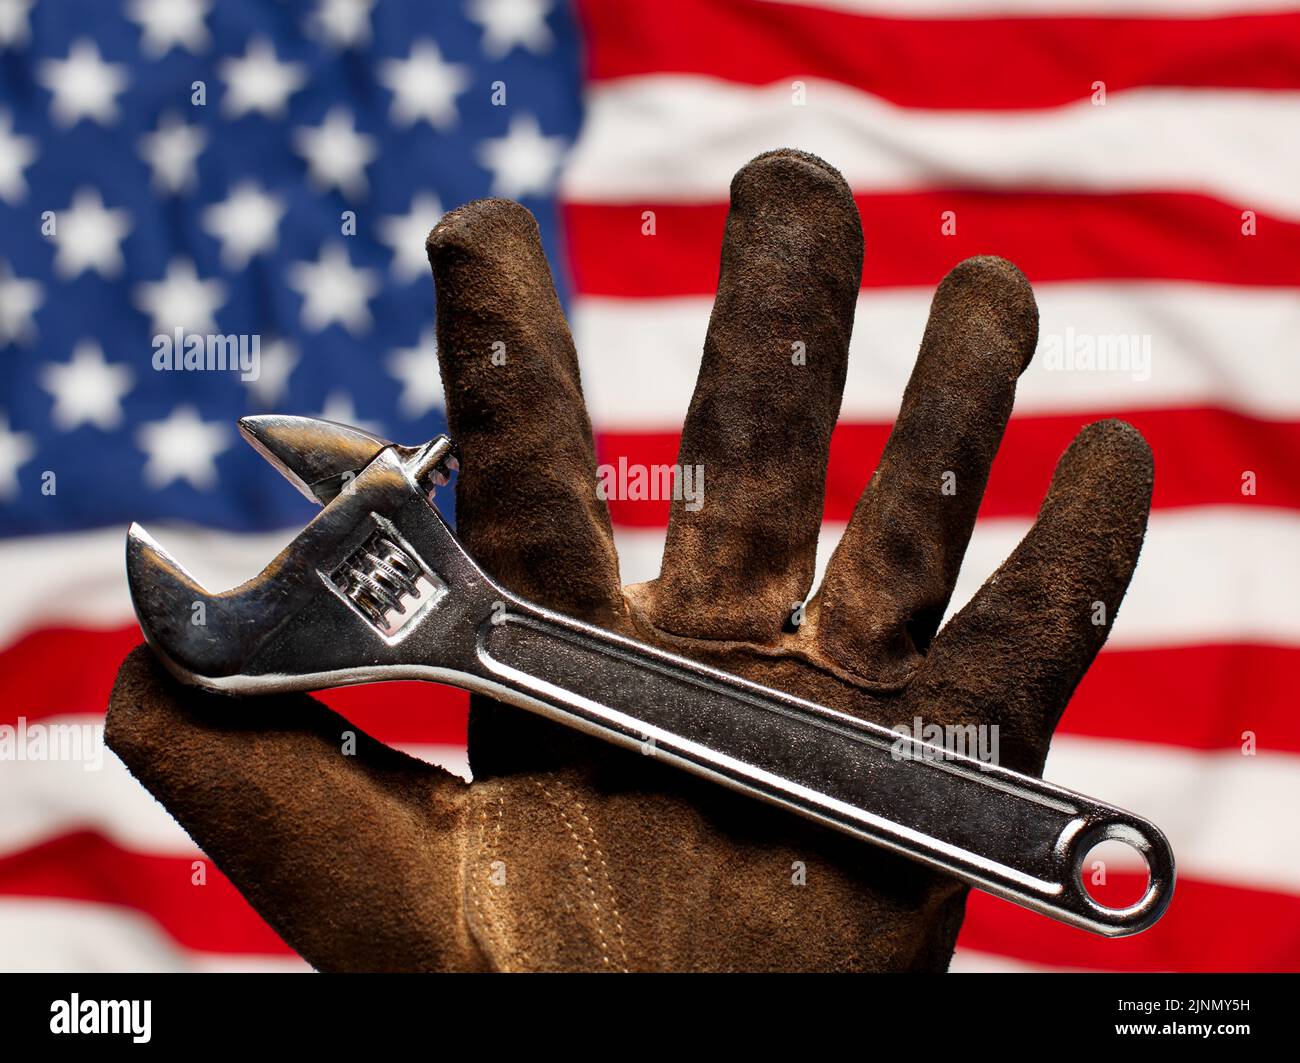 Guante de trabajo viejo y desgastado sujetando la llave ajustable sobre la bandera estadounidense. Concepto de trabajo, trabajo y empleo estadounidense. Foto de stock